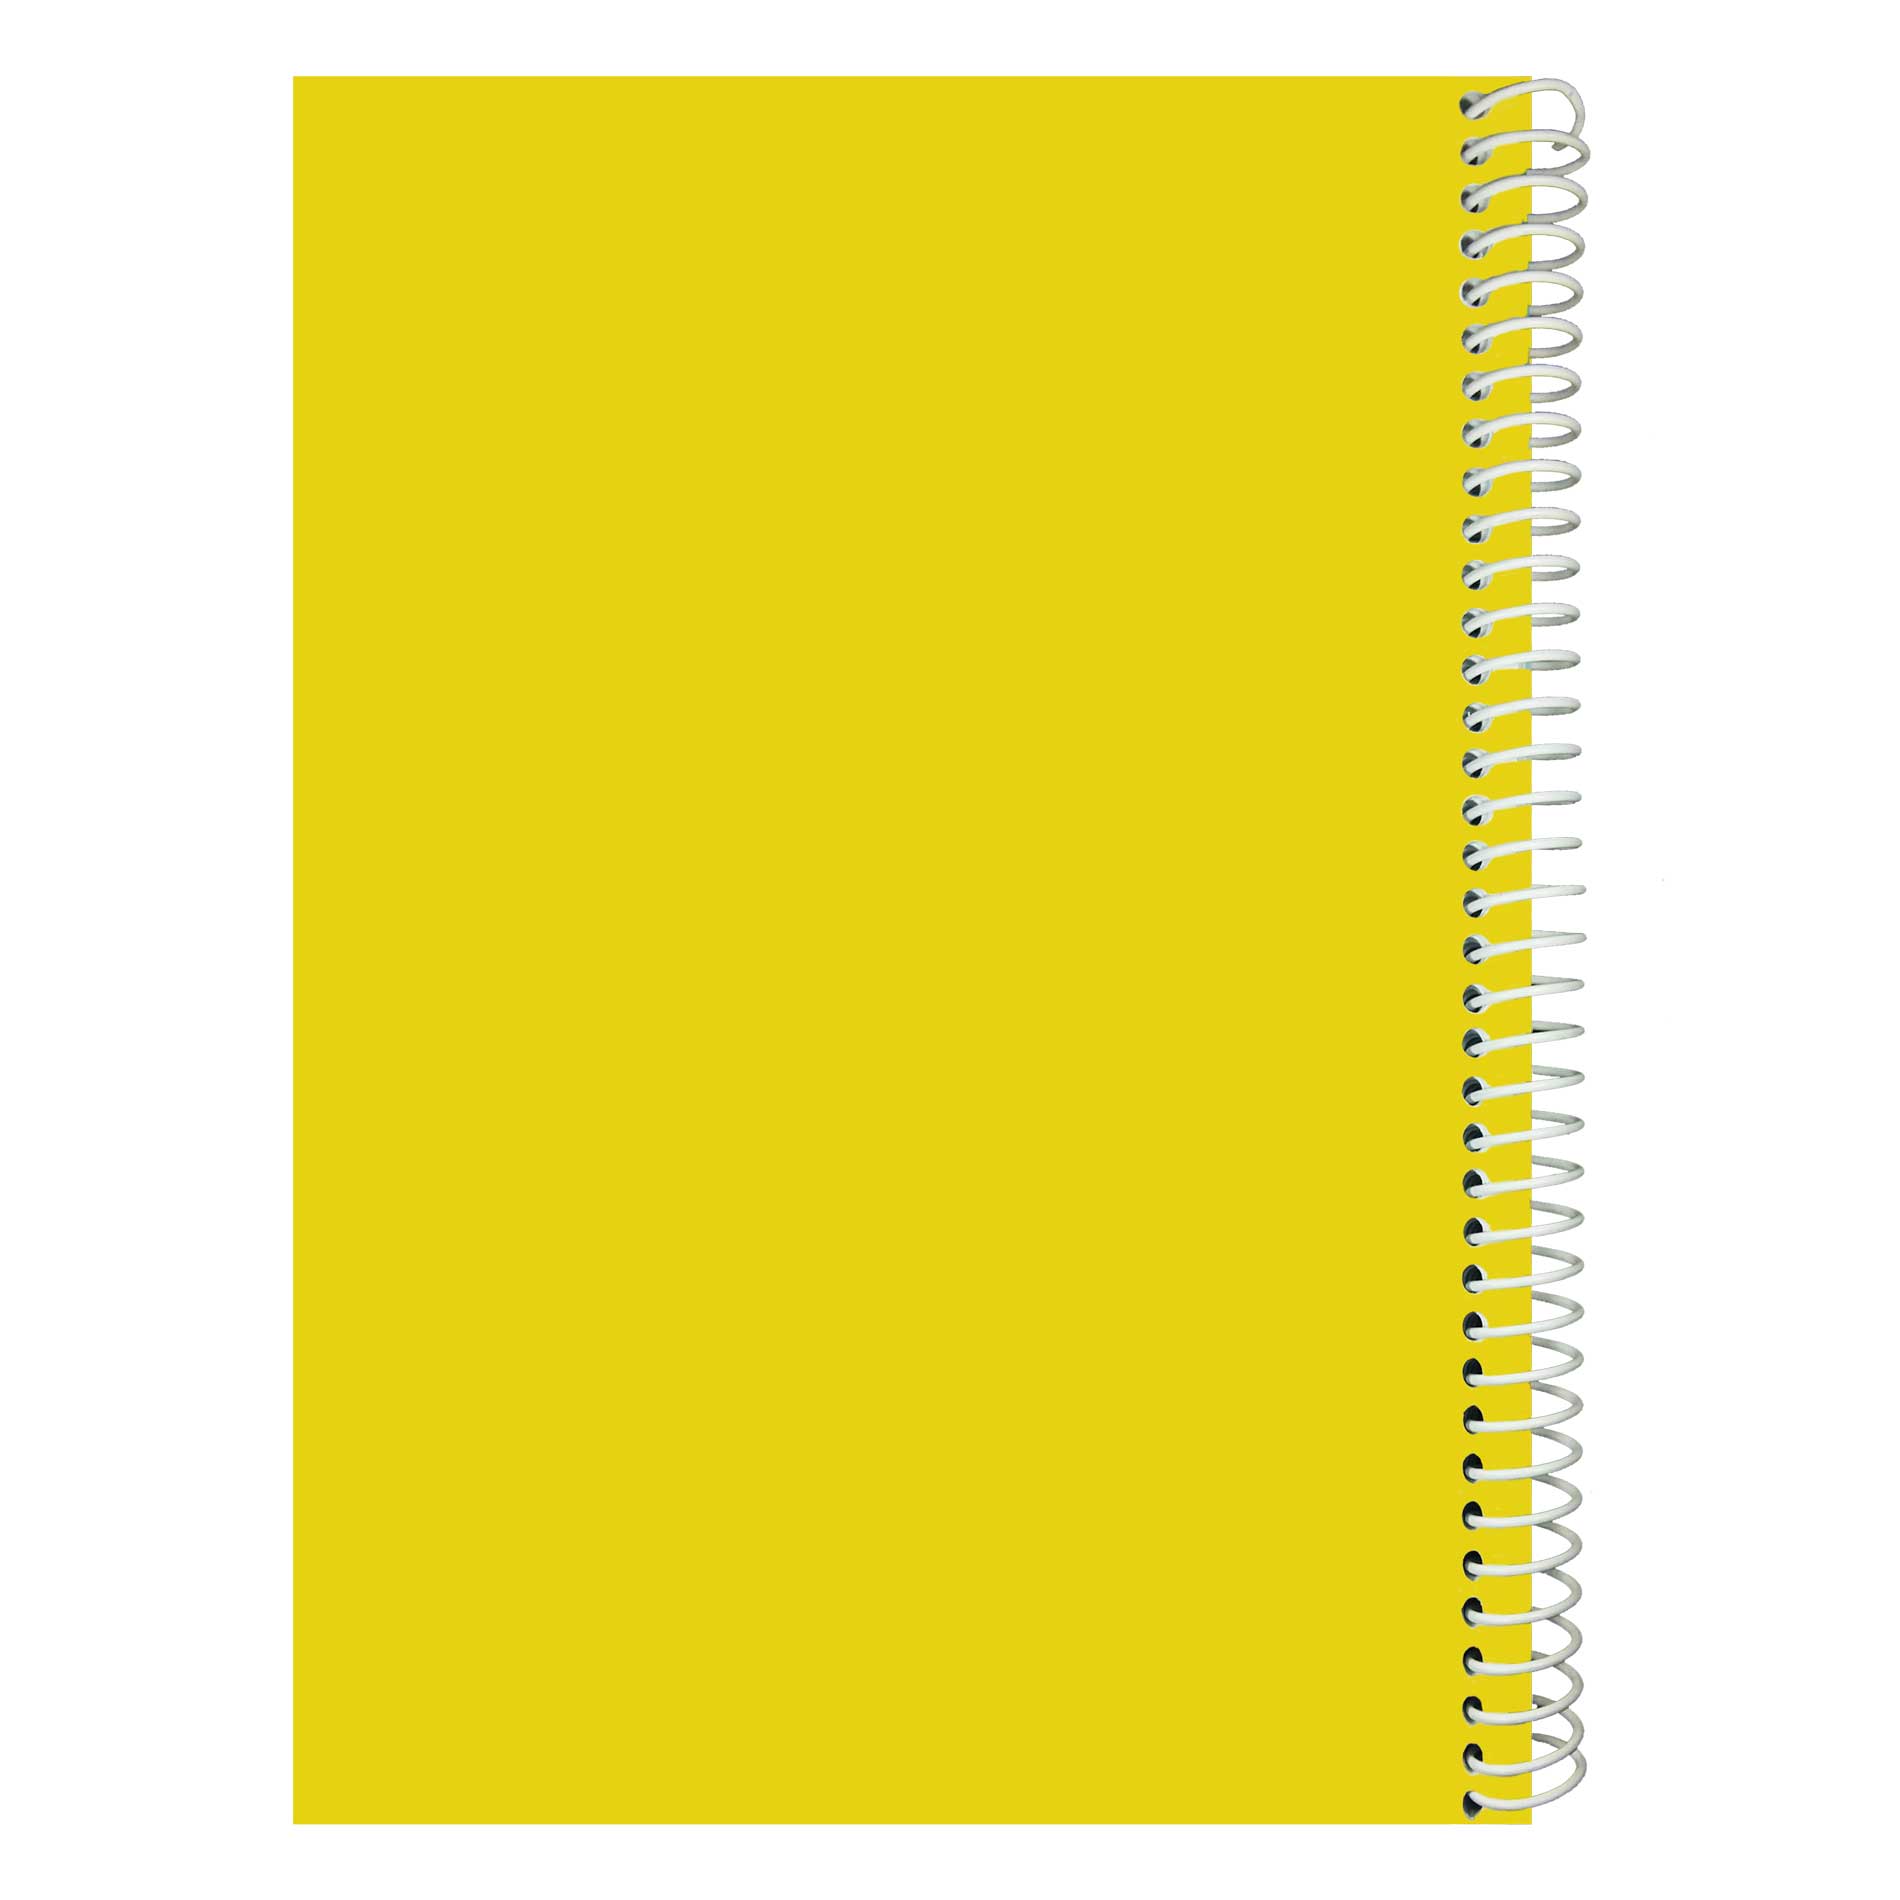 خرید انلاین دفتر نقاشی 50 برگ زرد کد 236 در وبسایت دوشنبه کالا